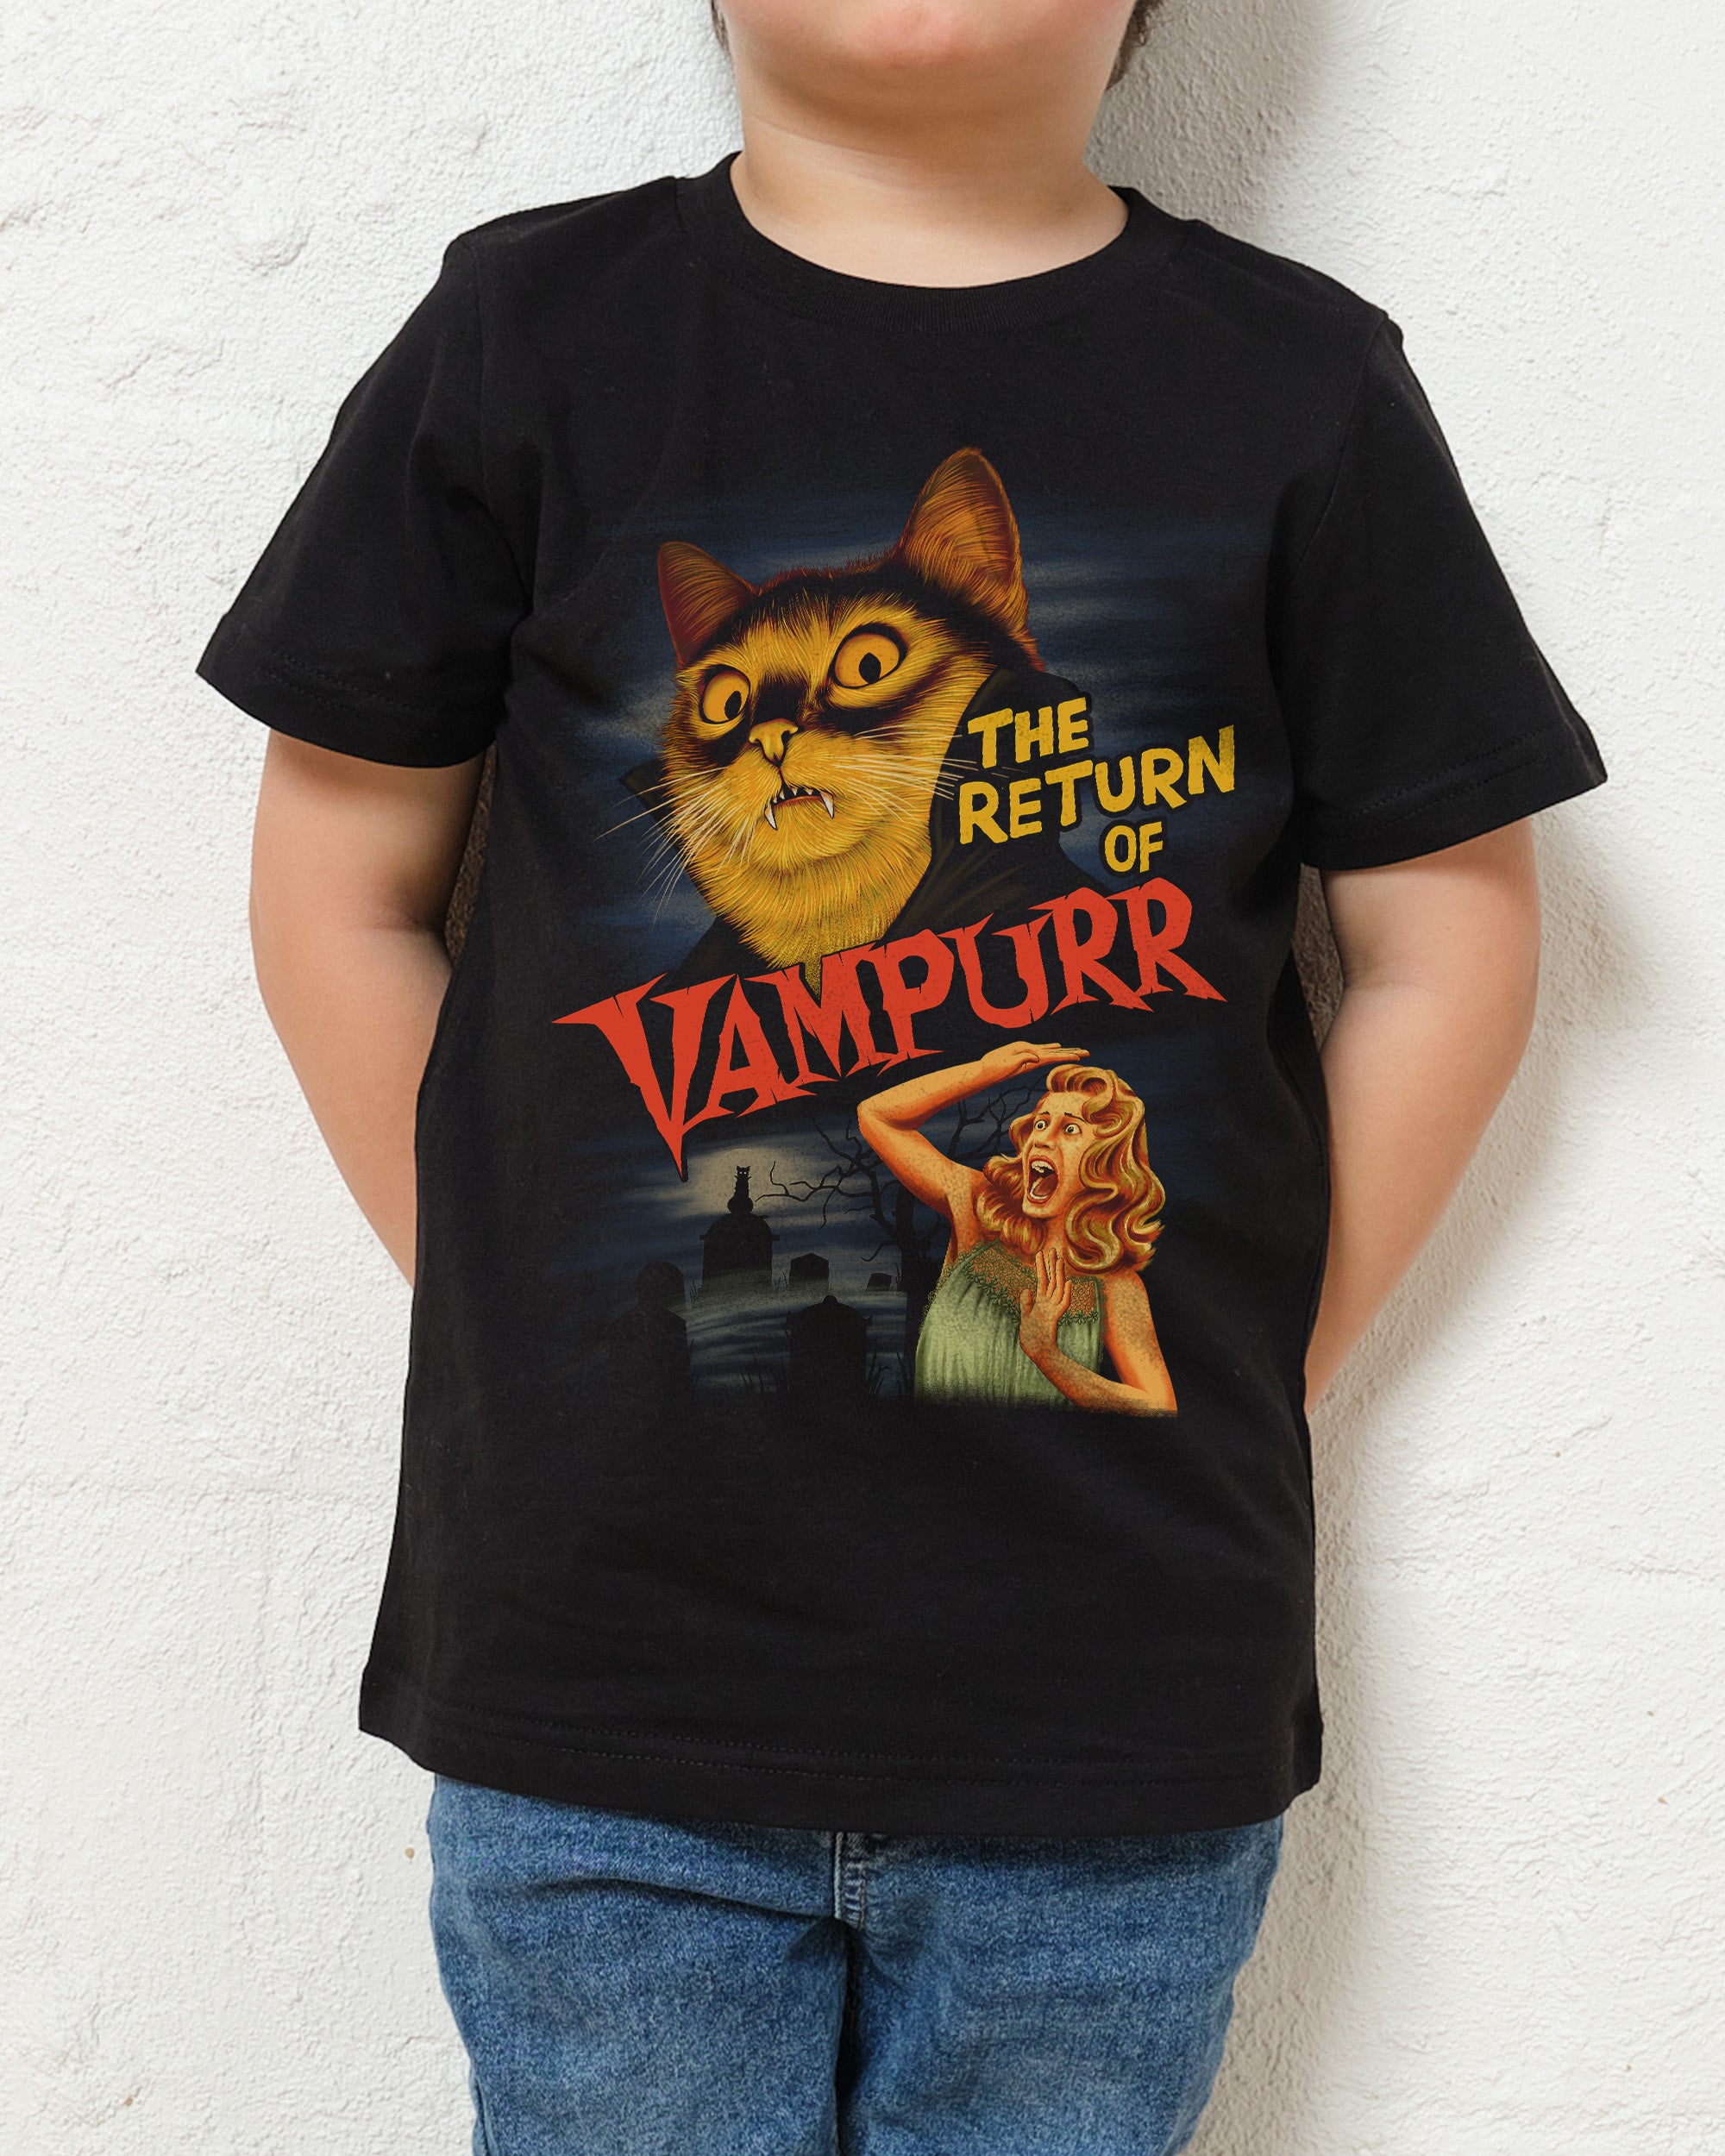 The Return of Vampurr Kids T-Shirt